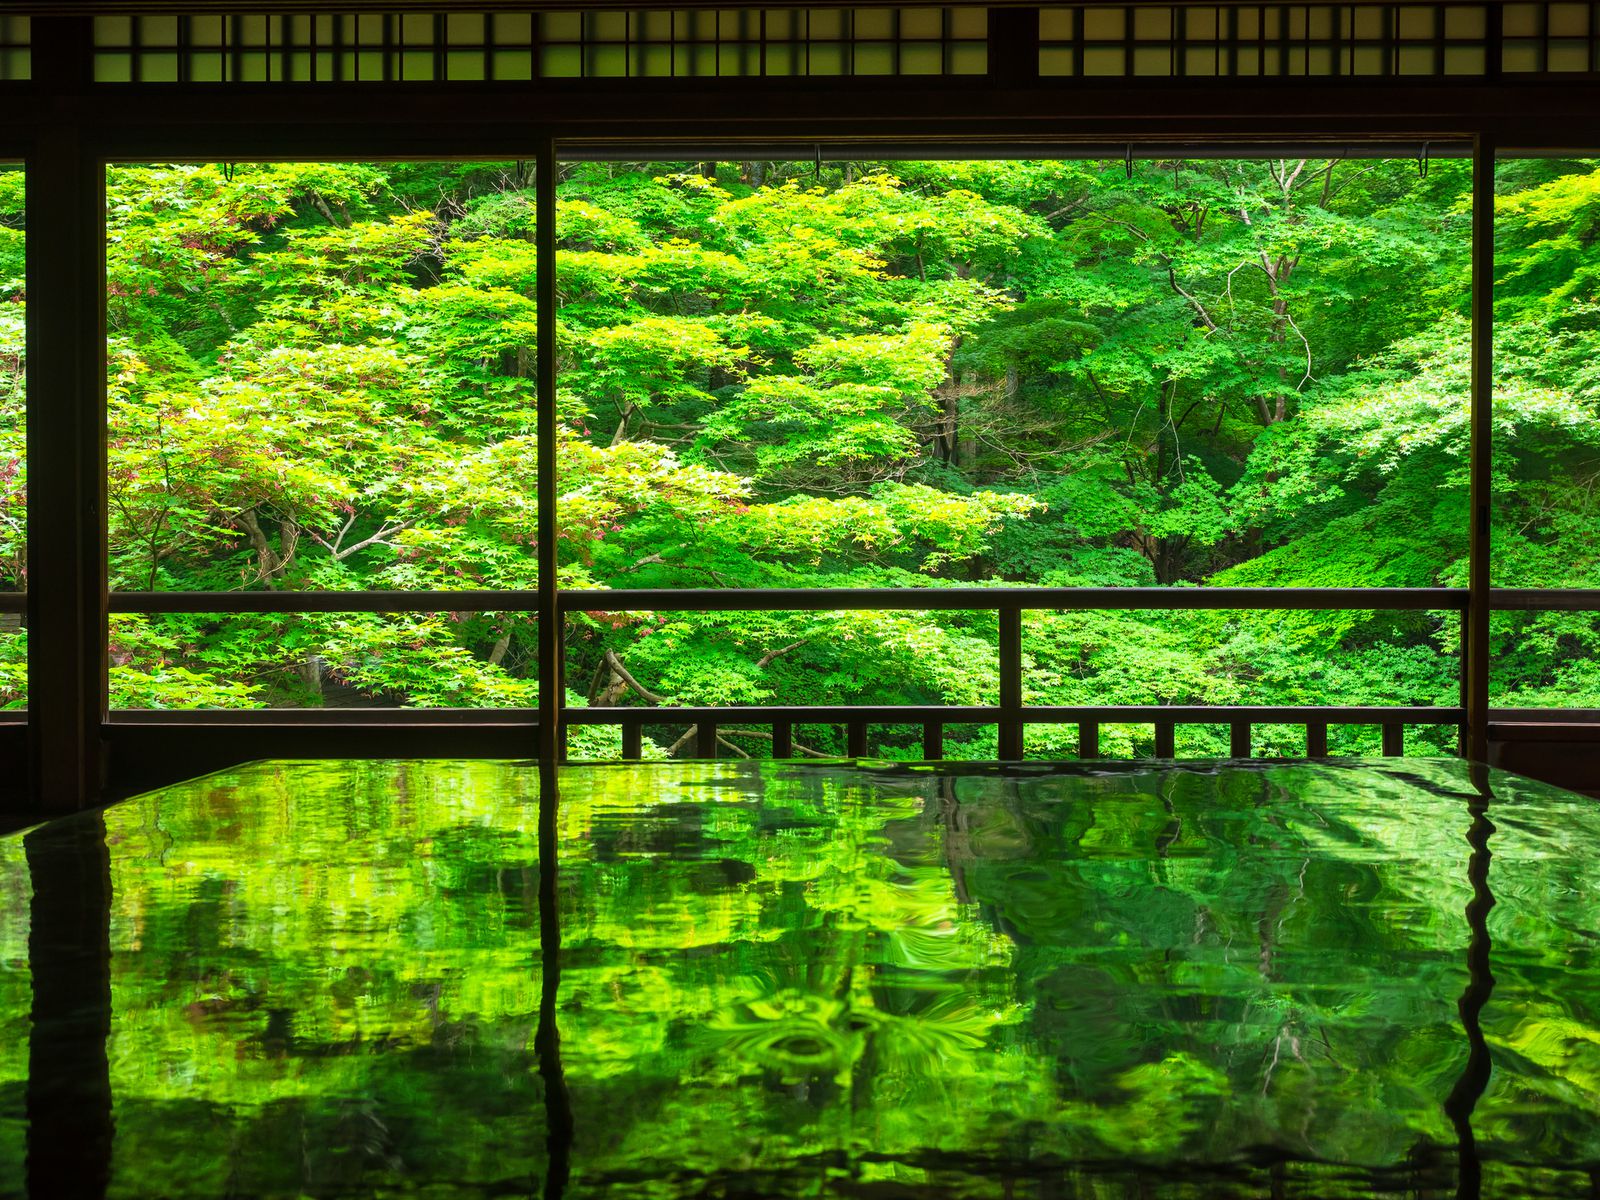 終了 一面に広がる 緑の絶景 京都 瑠璃光院で 春の拝観 開催 Retrip リトリップ